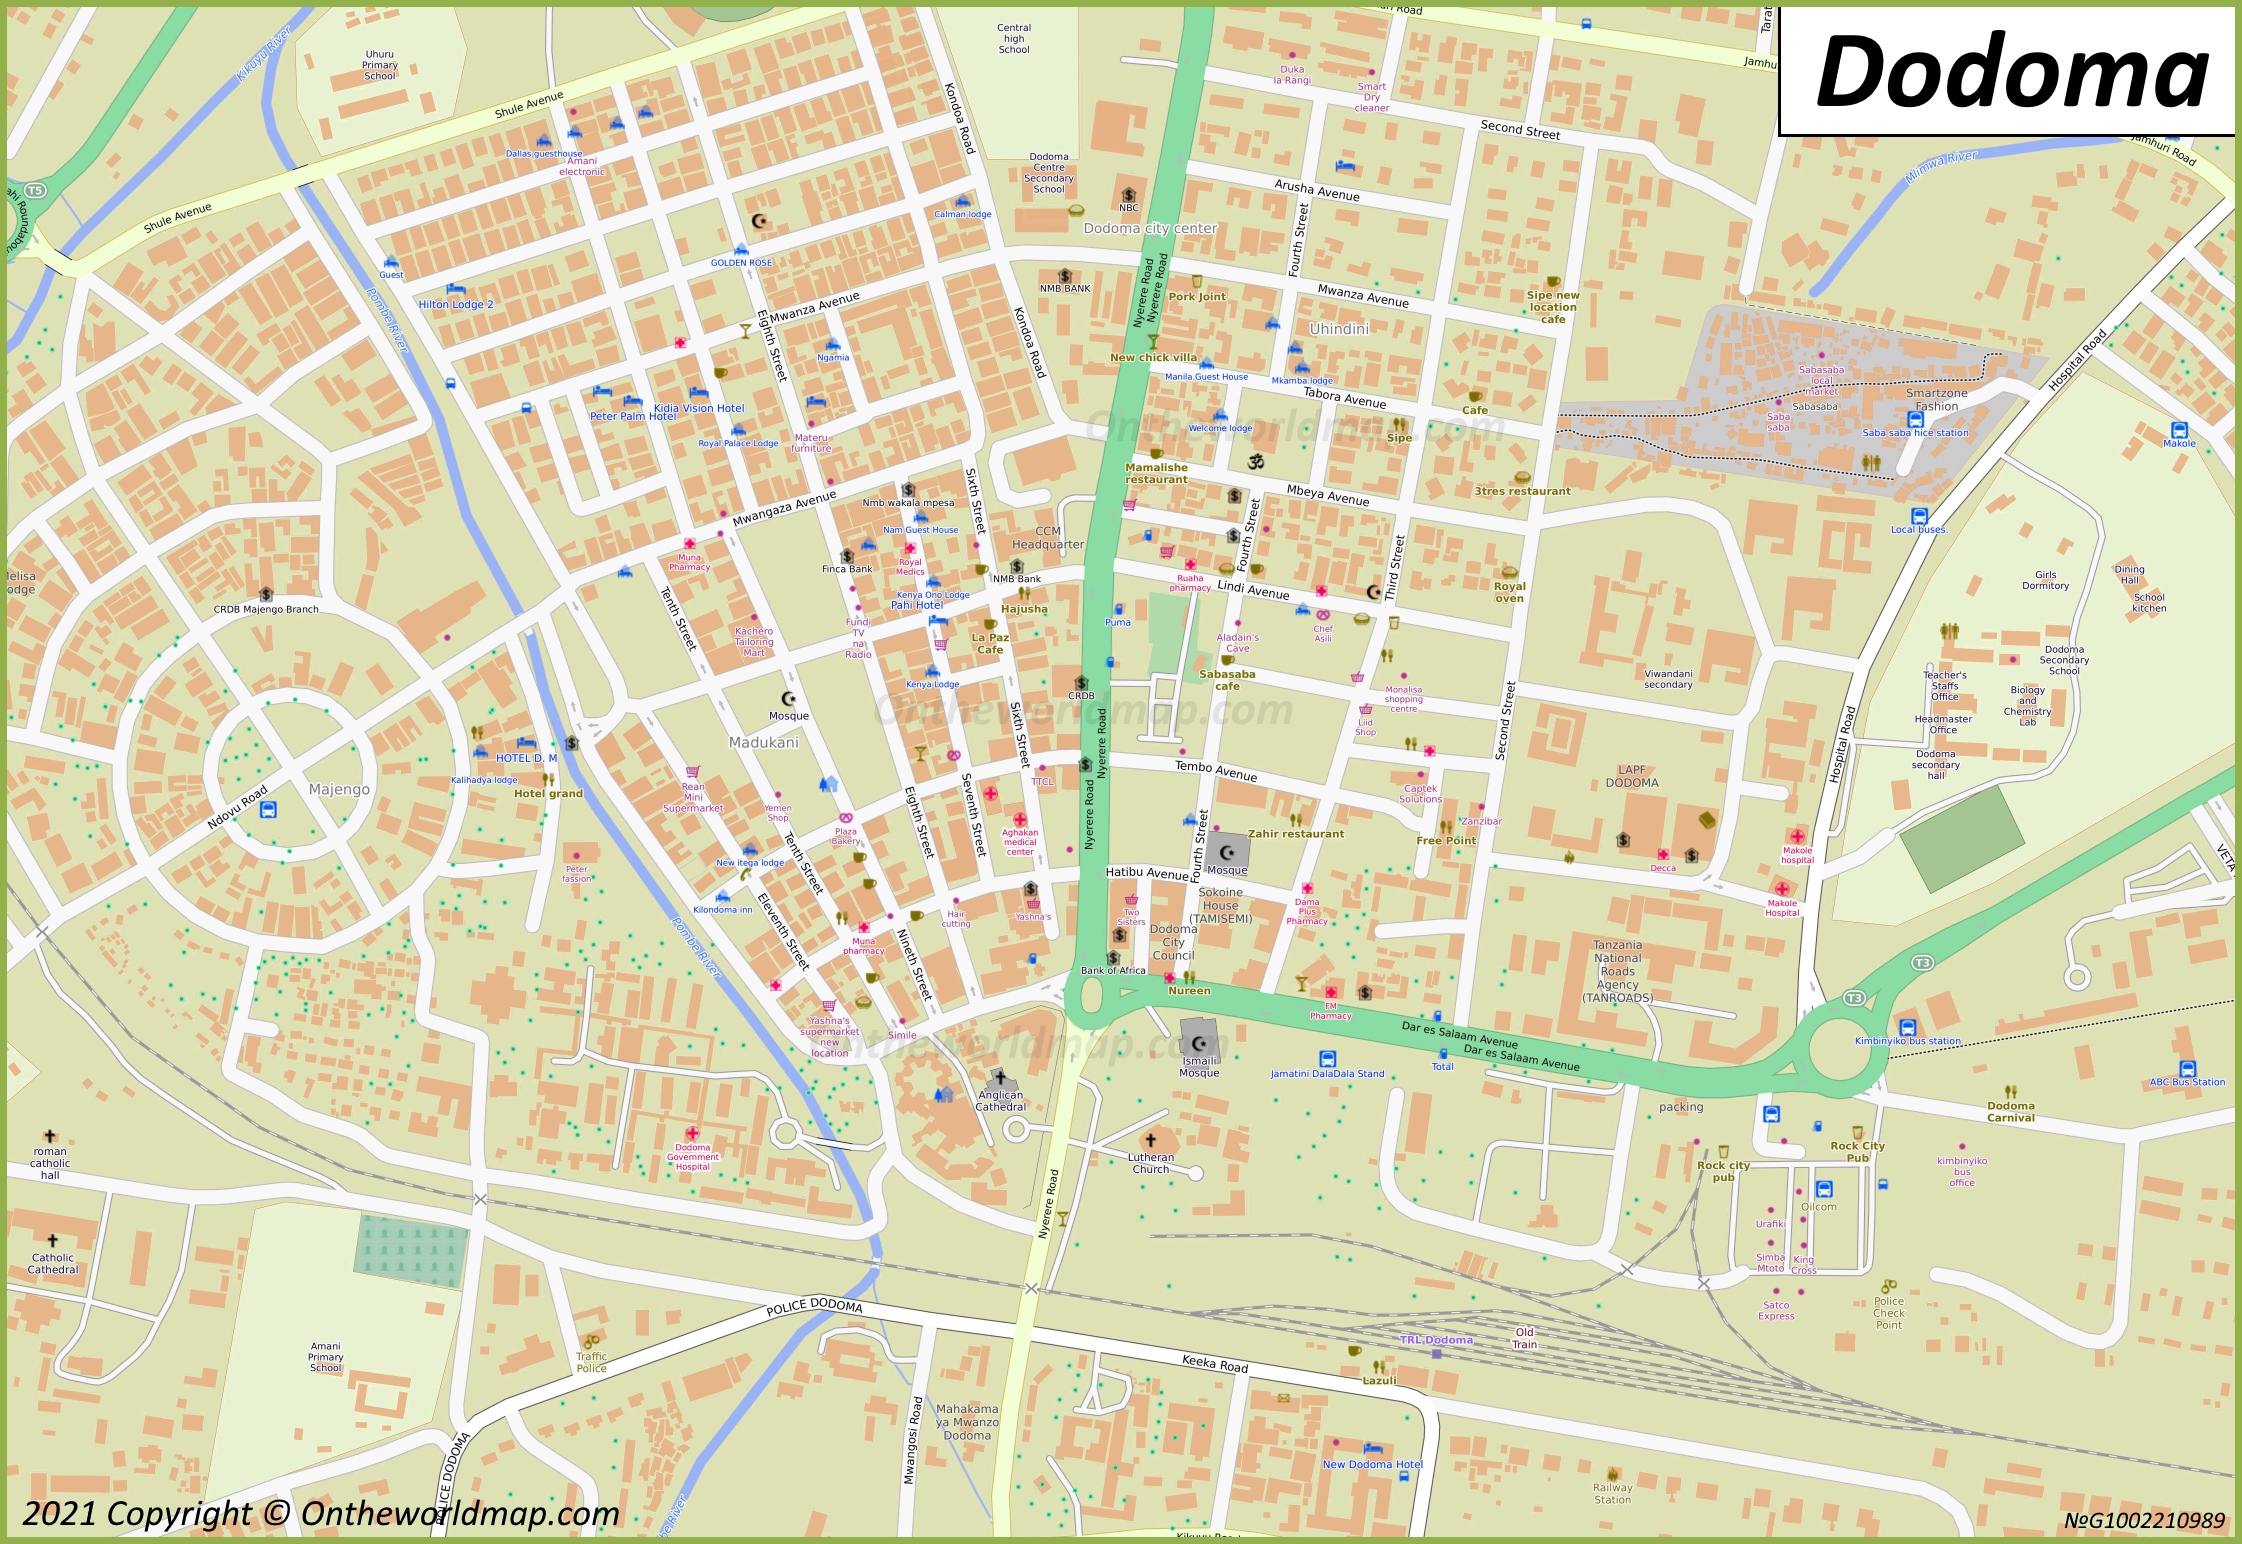 Dodoma City Center Map